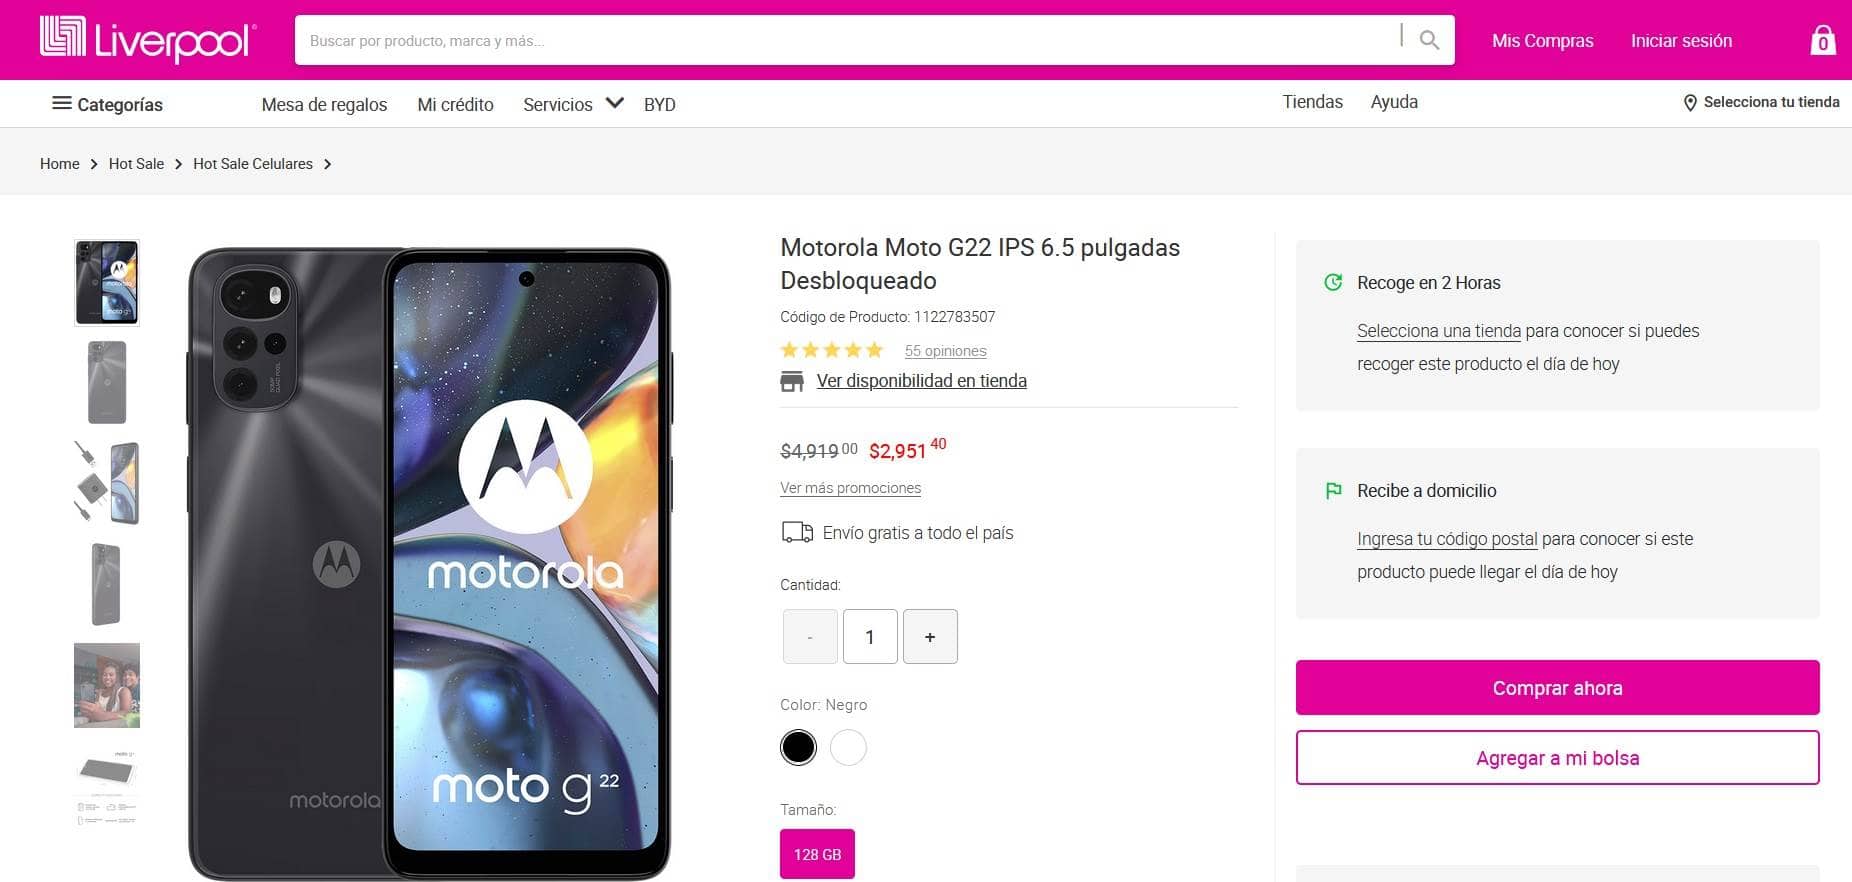 Smartphone Motorola Moto G22 precio con descuento en pagina de Liverpool